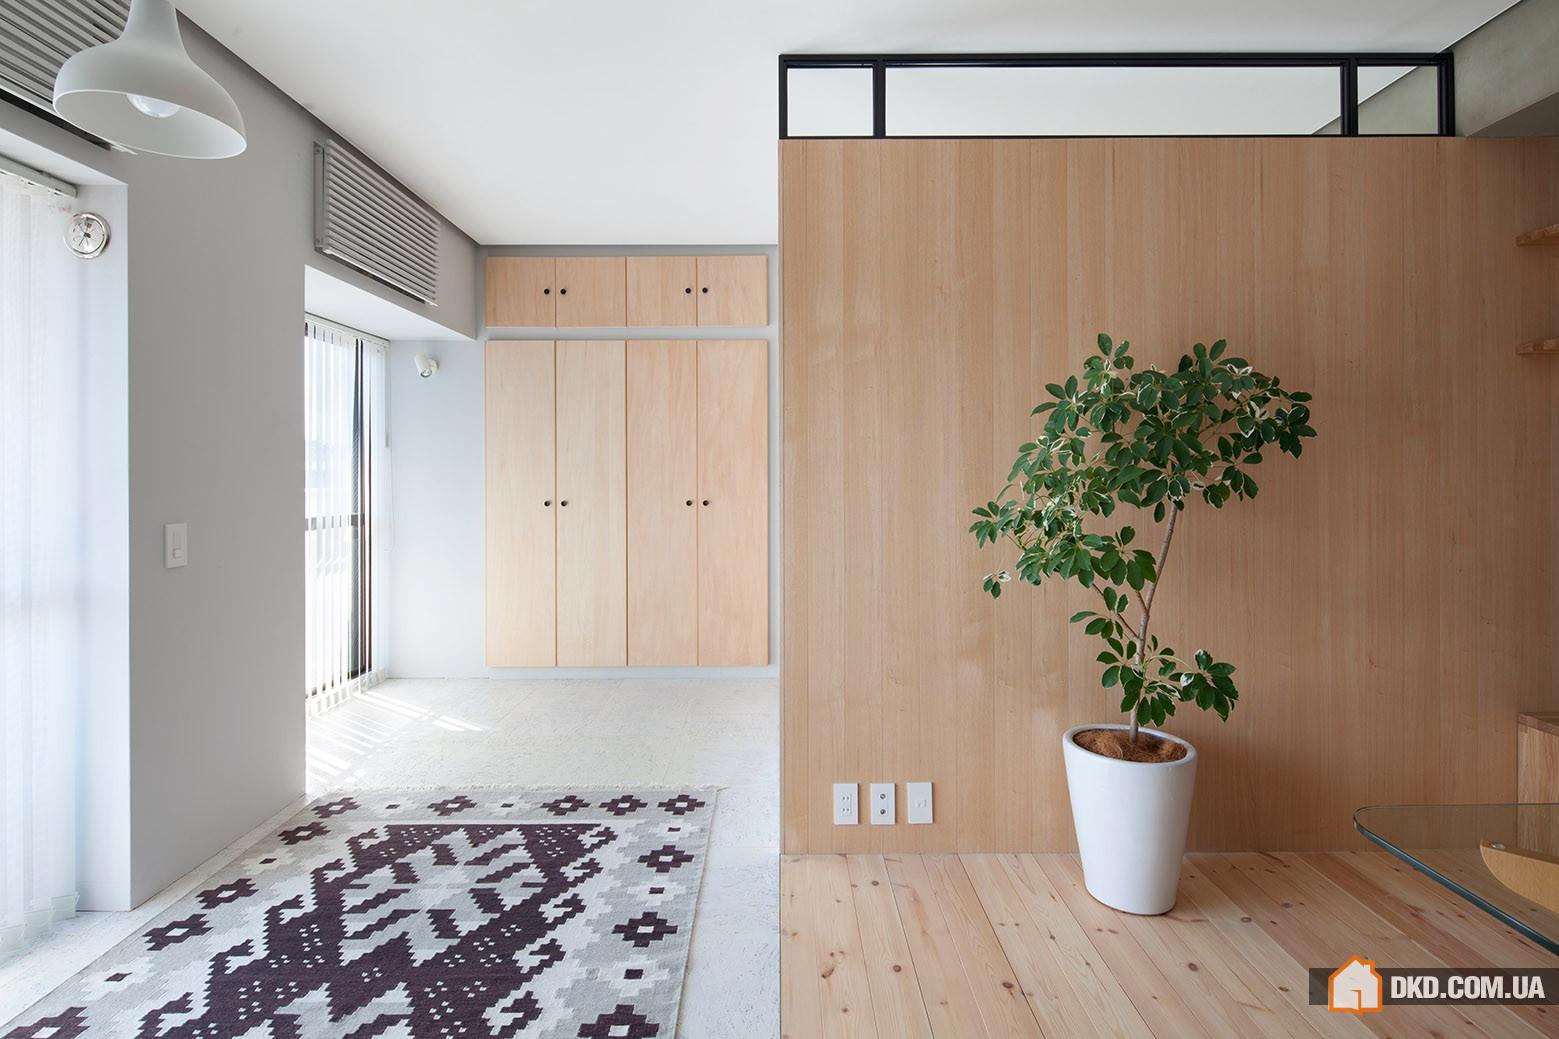 Реновация квартиры для женатой пары в Йокогаме